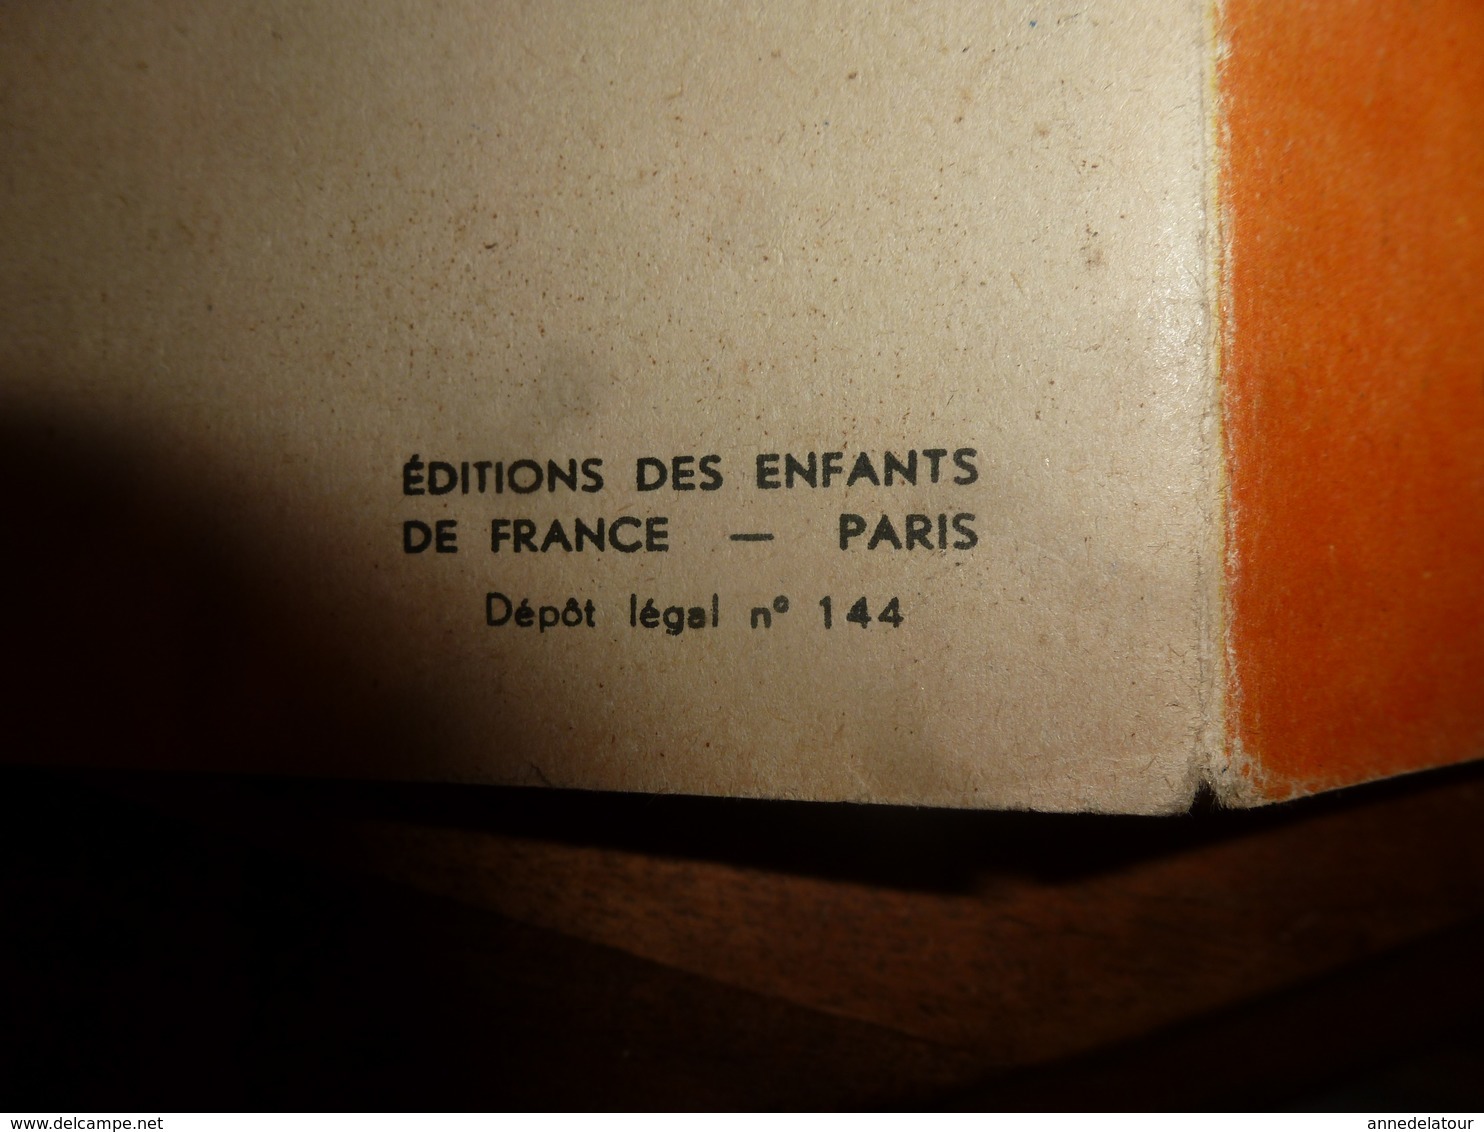 1953 NOUNOUCHE  Gouvernante,   Texte Et Dessins De DURST - Verzamelingen